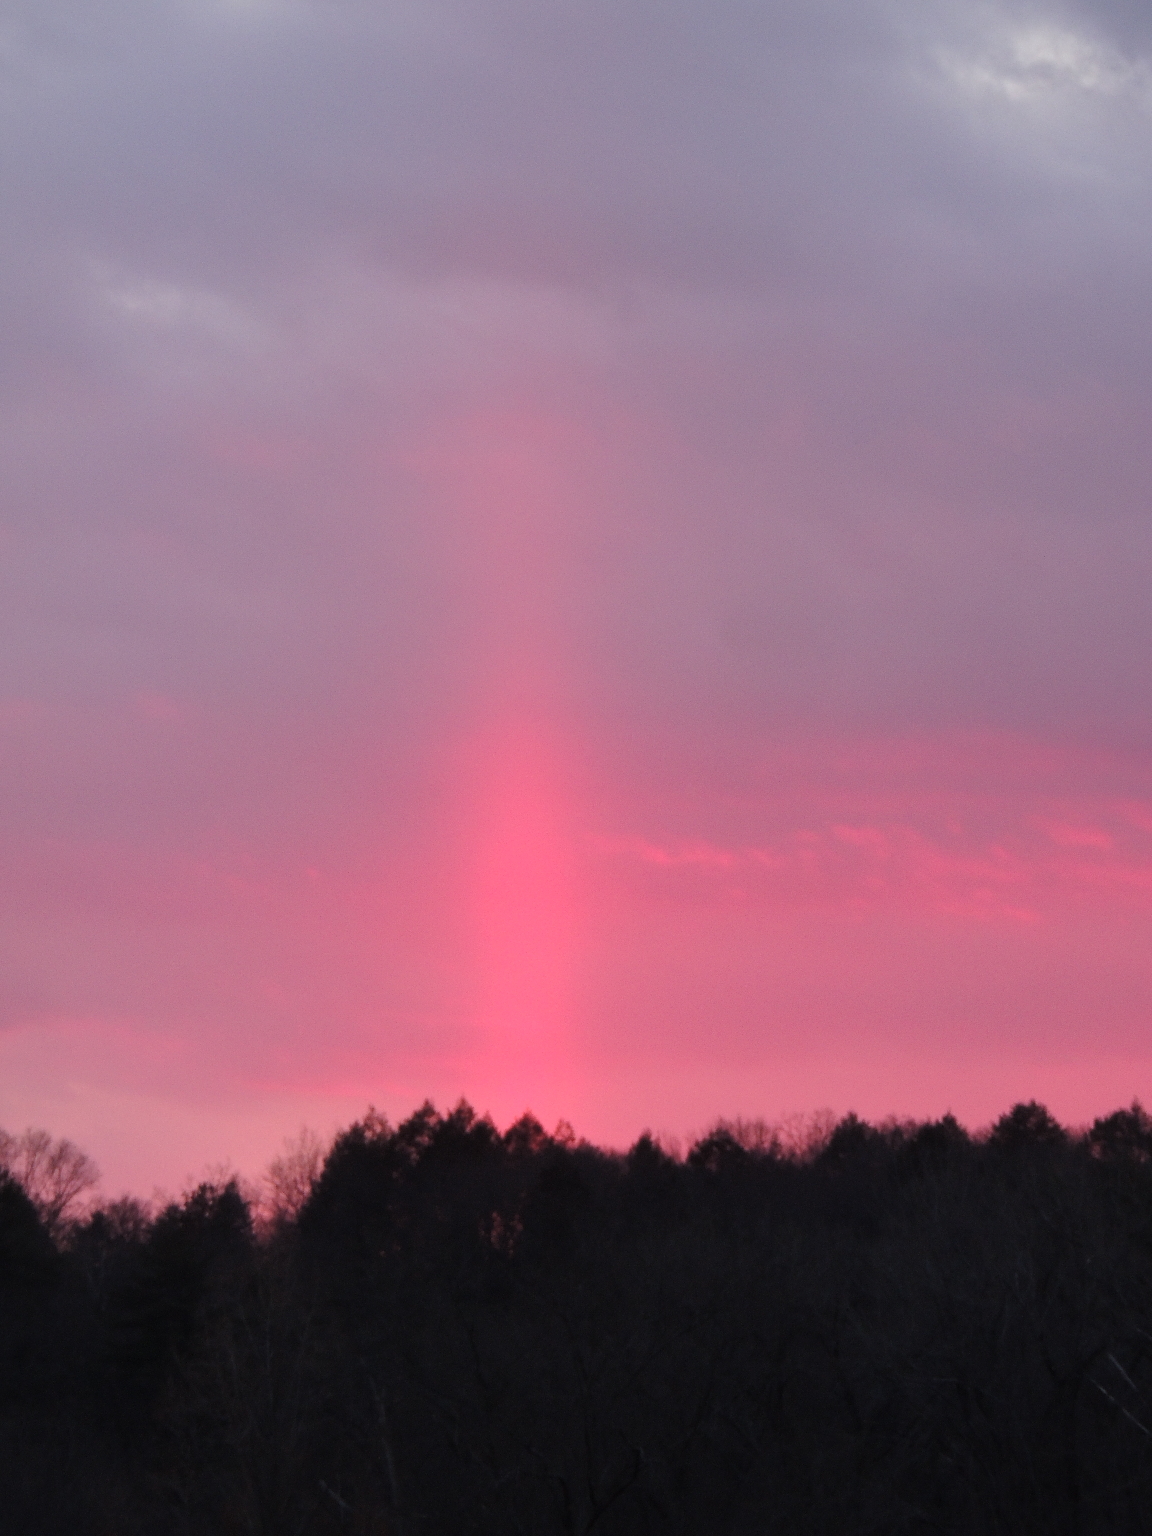 palblog: An unusual sunset light effect